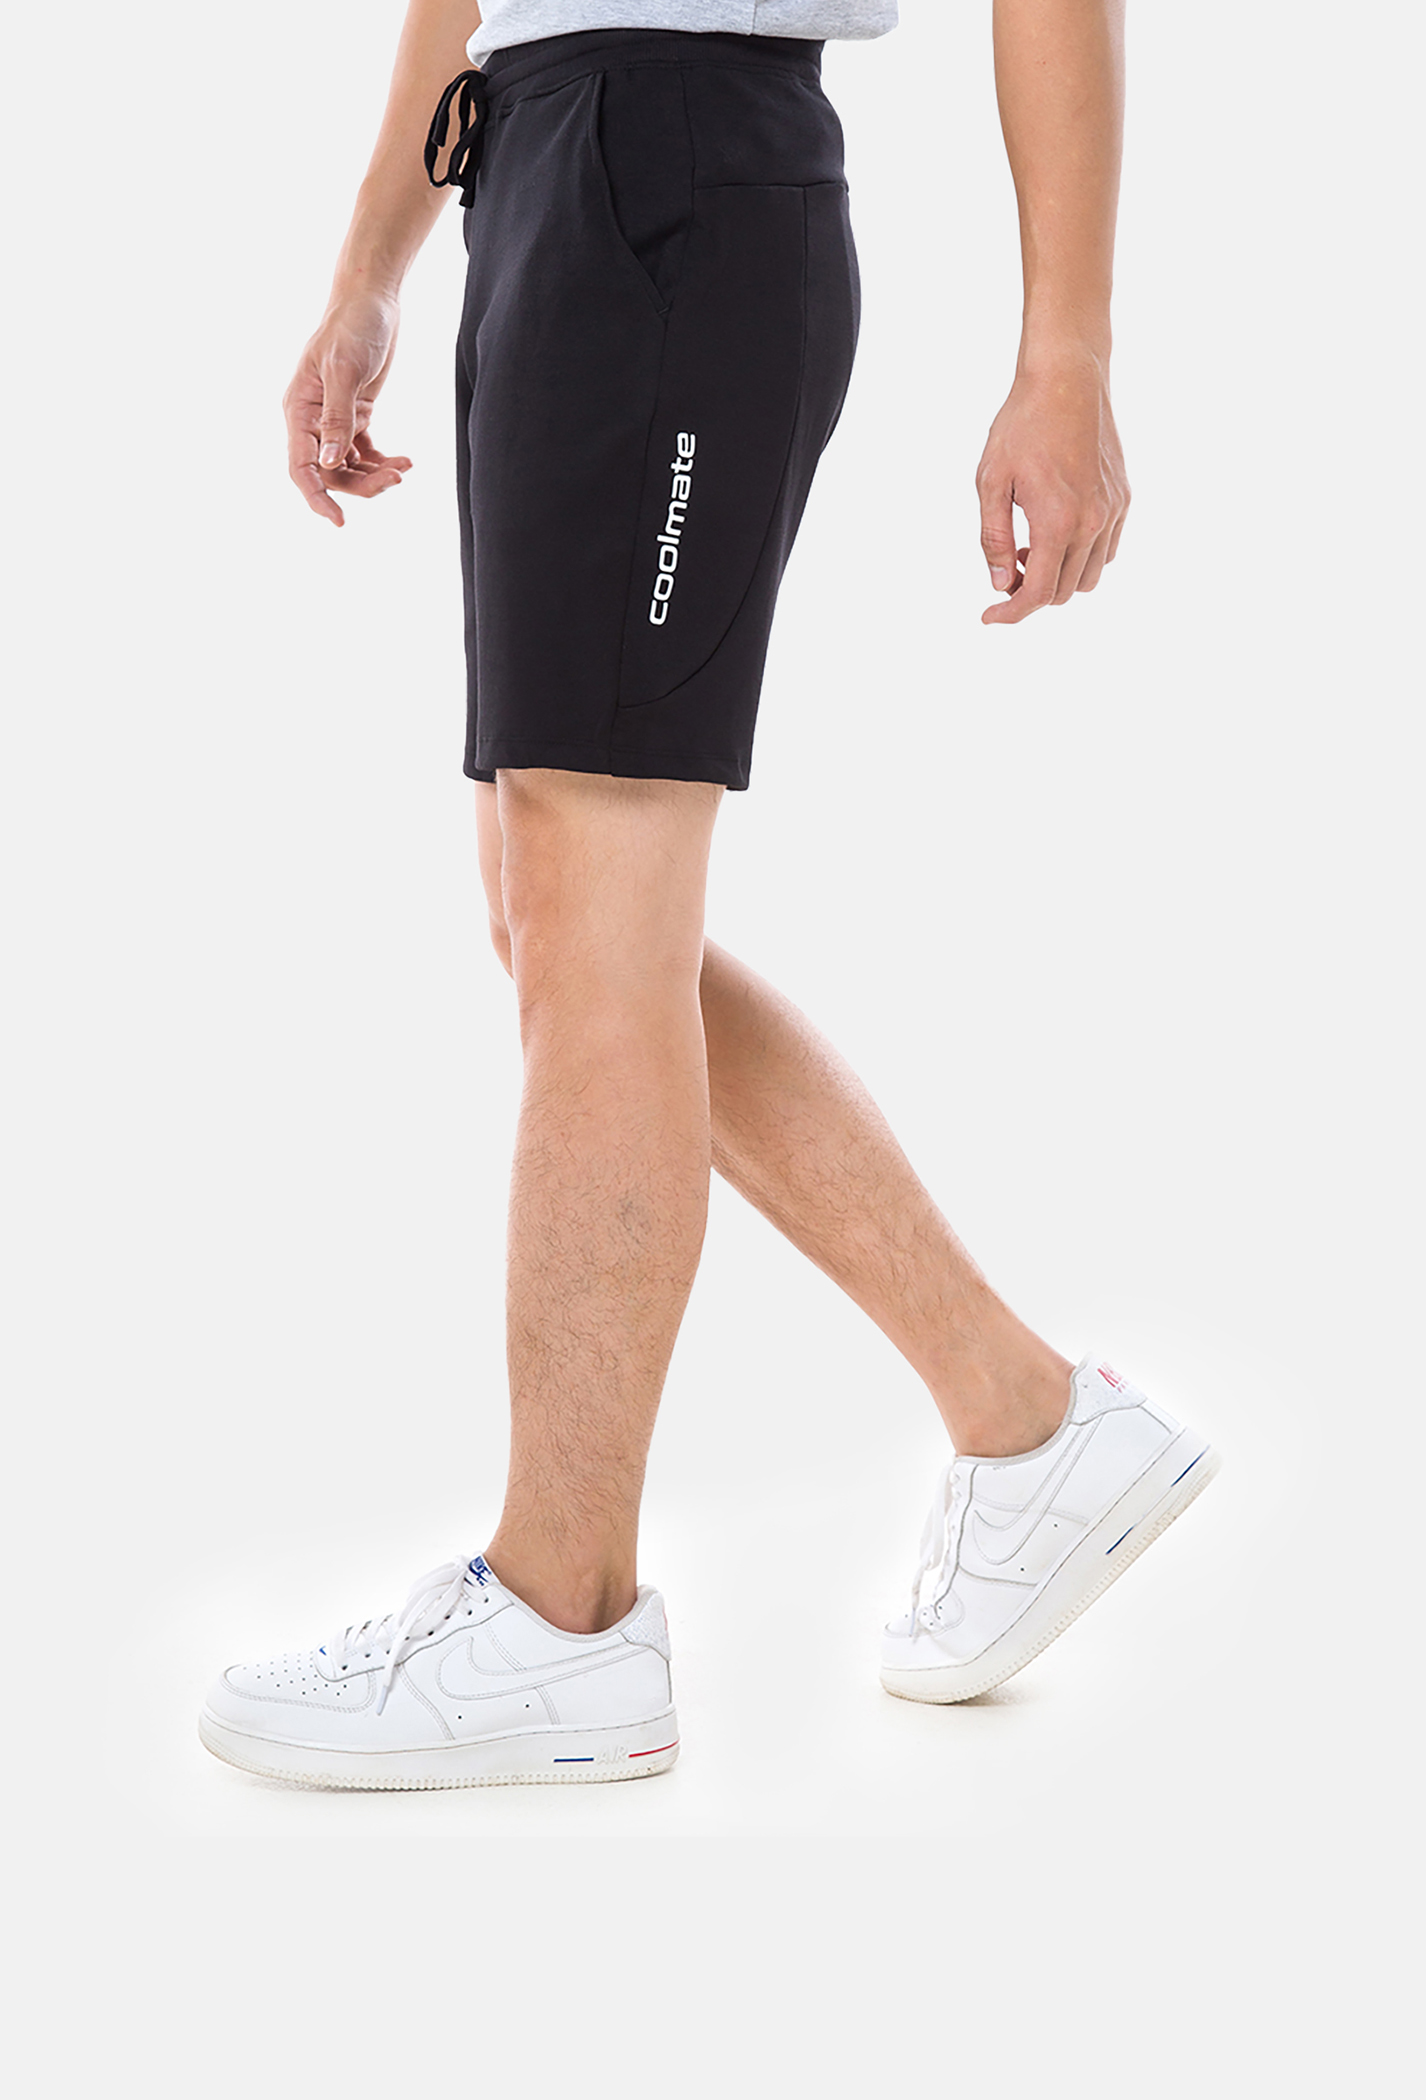 DEAL - Quần Shorts nam Easy Active (Form nhỏ tăng 1 size) gửi từ HN Đen 1